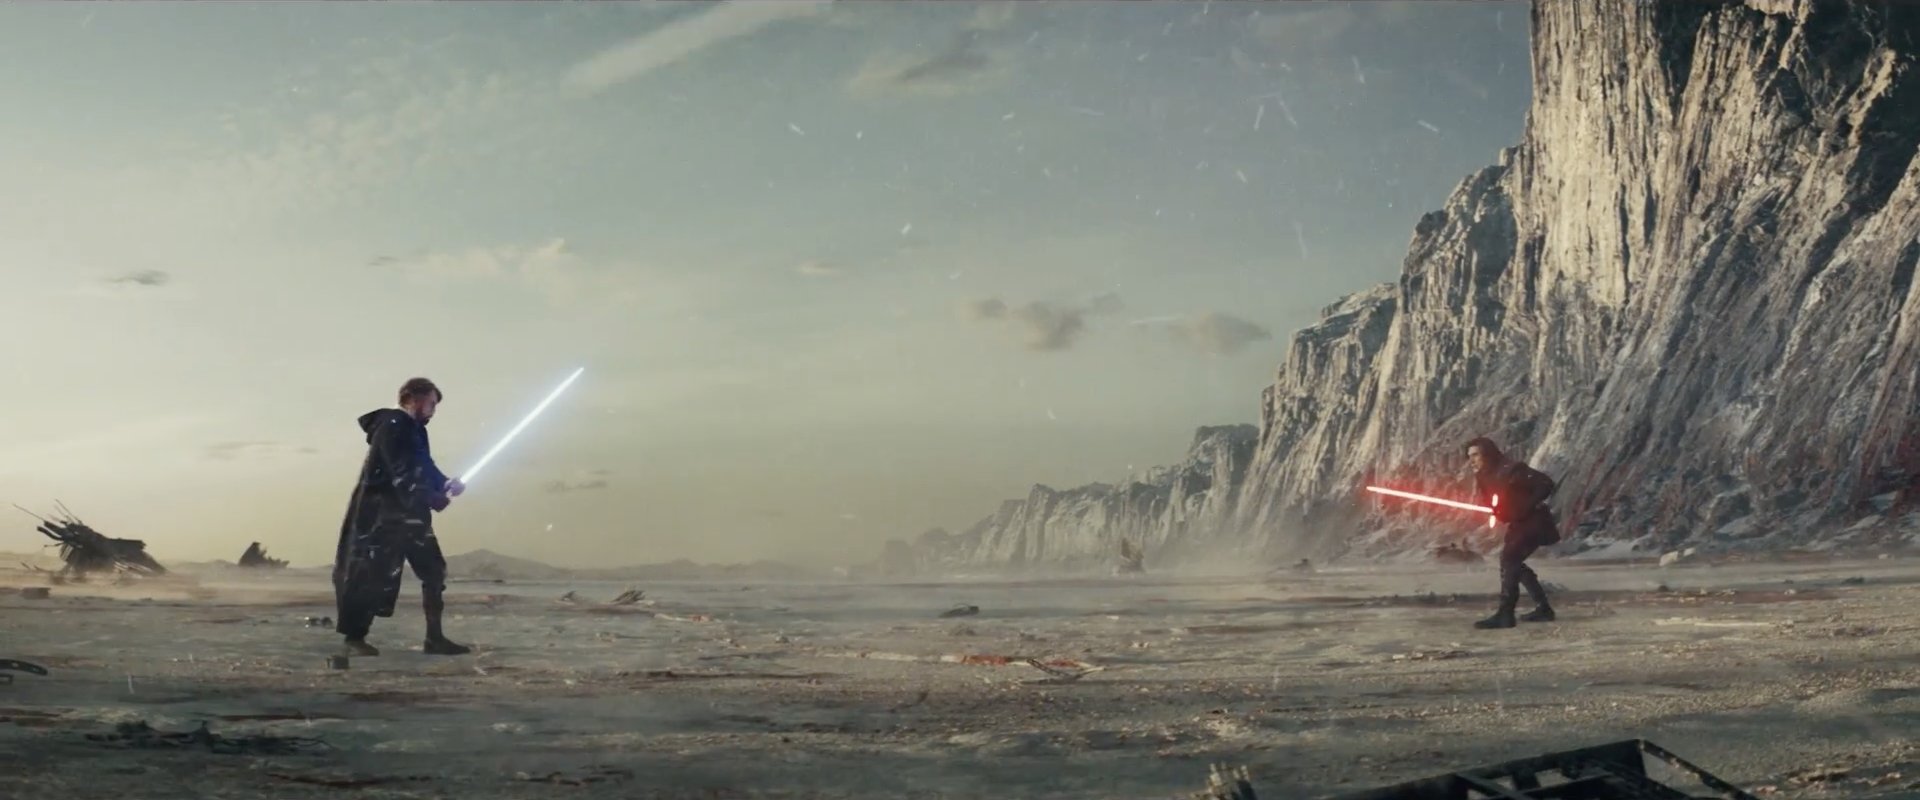 Revelados los secretos de la Fuerza en 'Star Wars: Los Últimos Jedi'